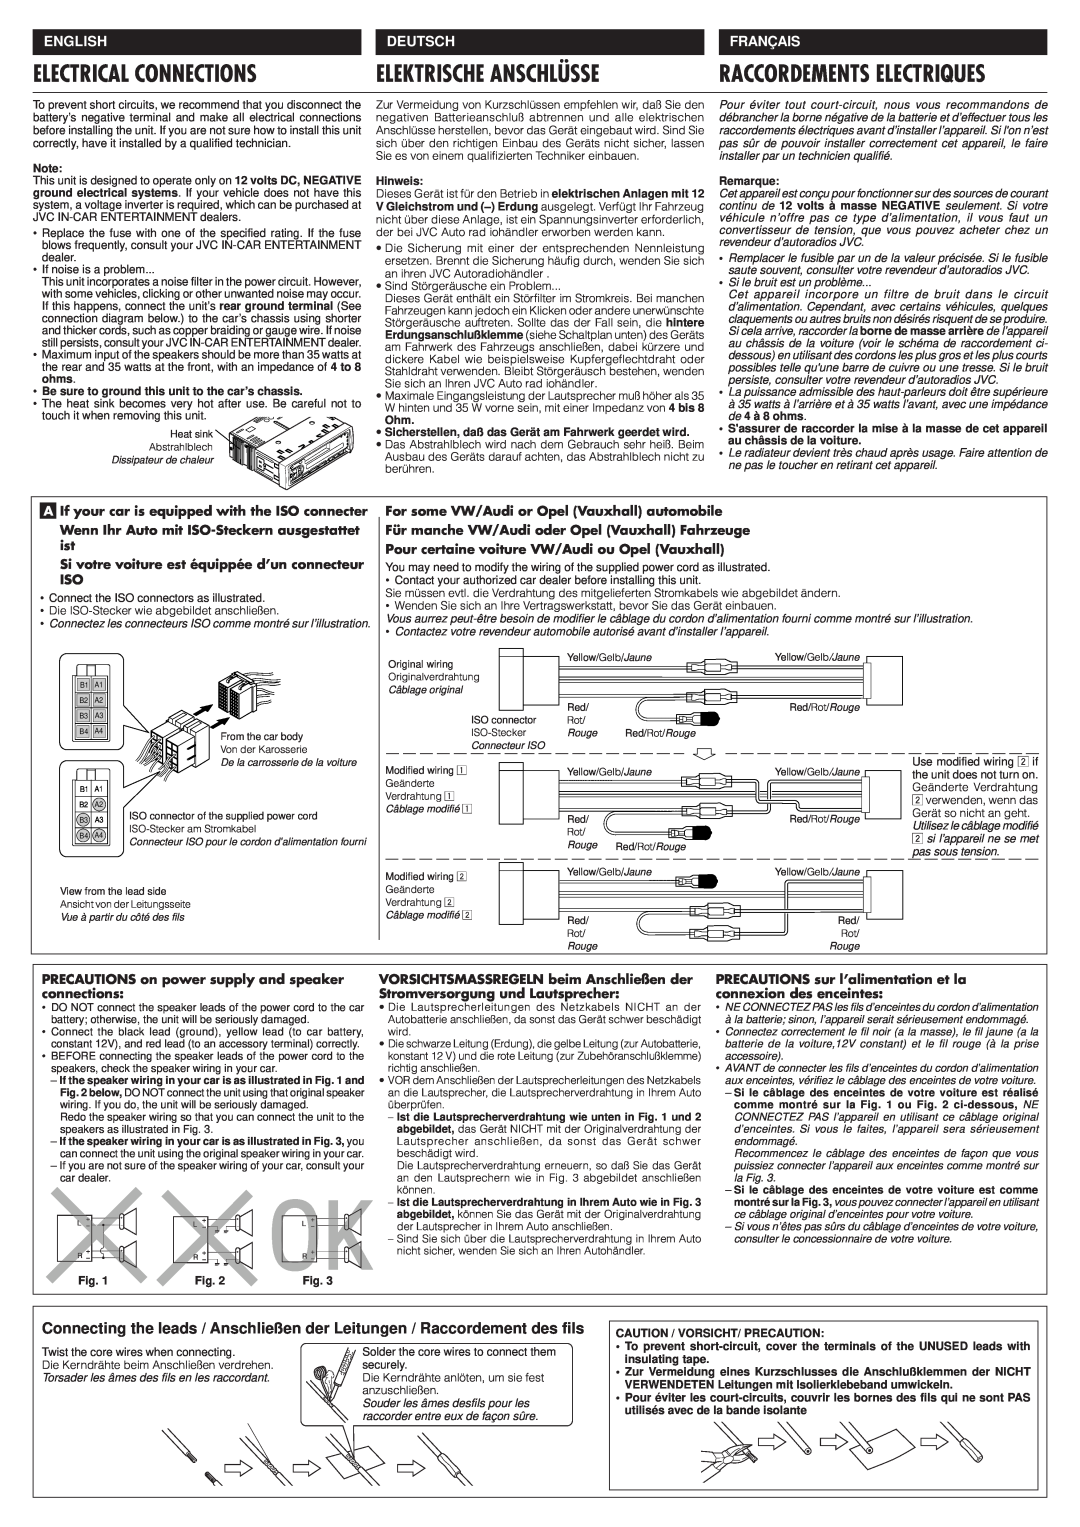 JVC KS-FX230 manual Electrical Connections, Elektrische Anschlüsse, Raccordements Electriques, English, Deutsch, Français 